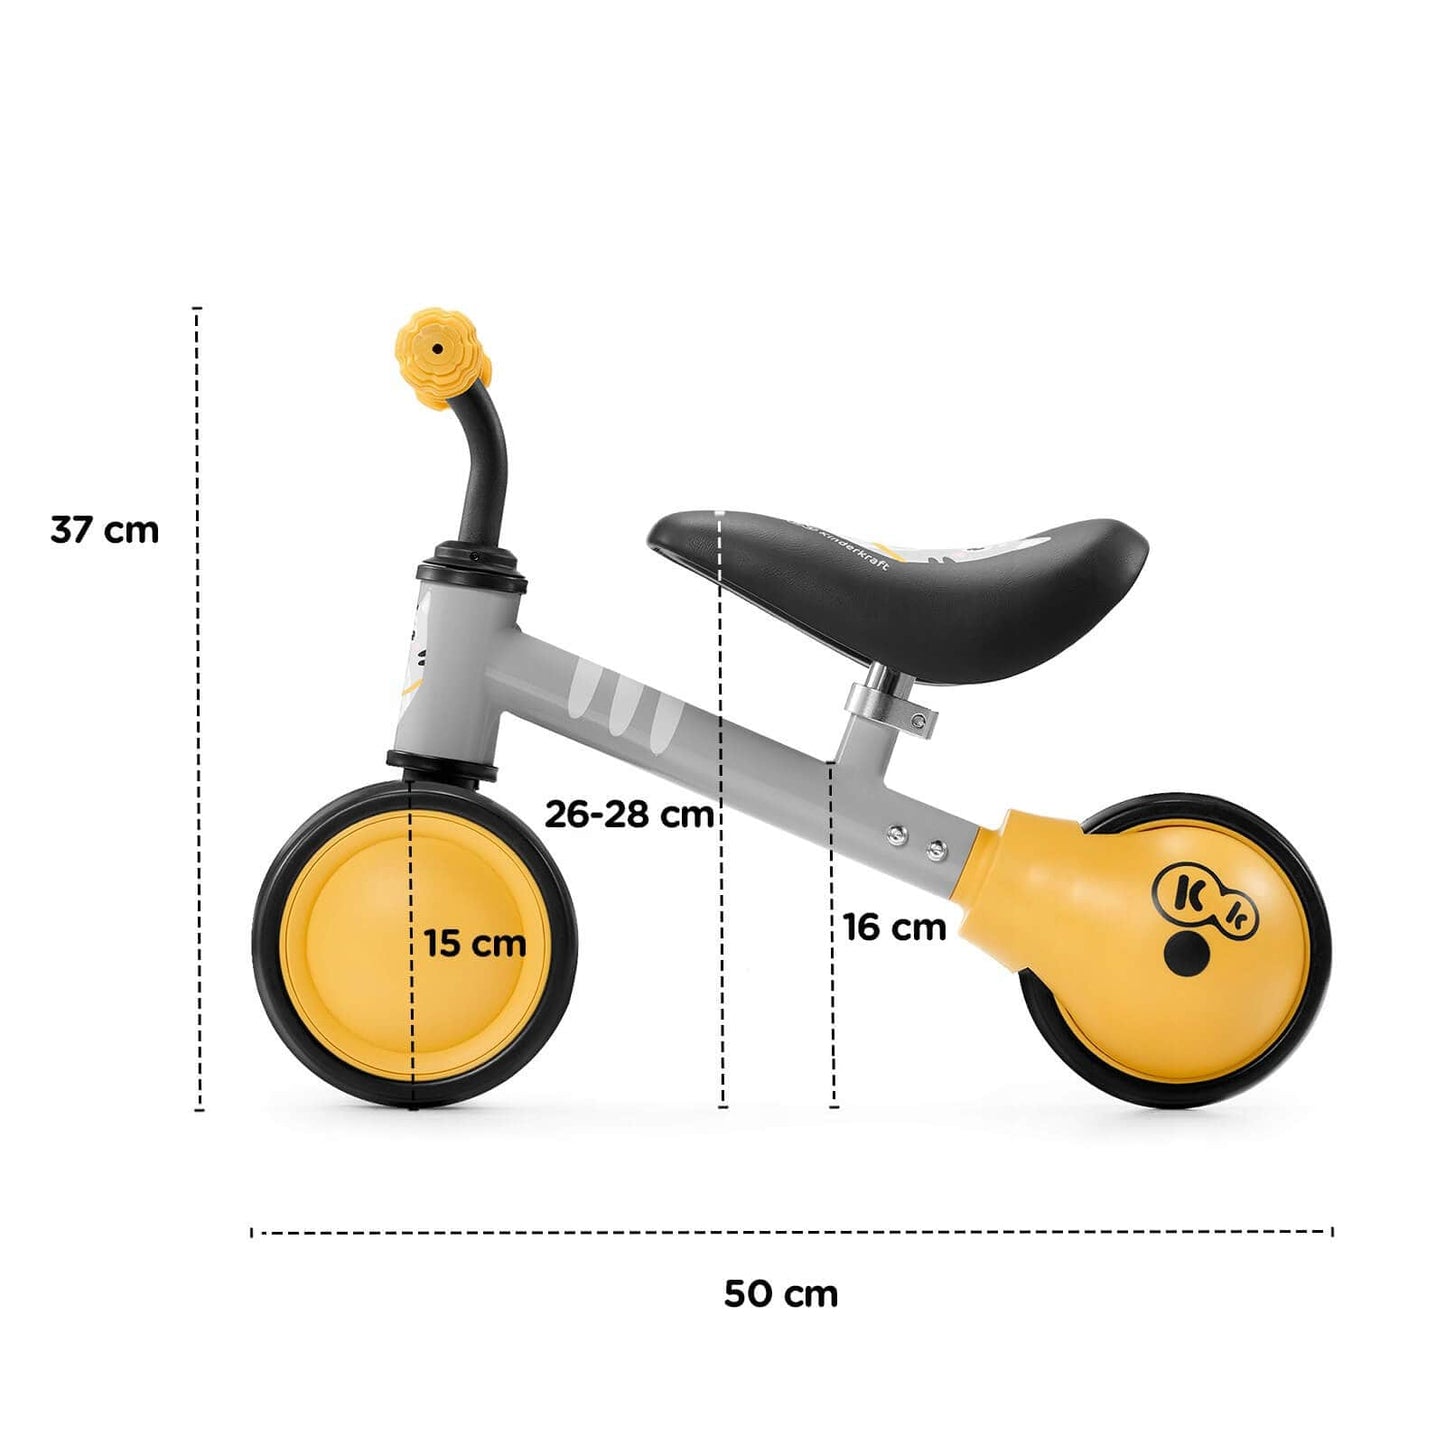 Balansinis dviratukas "Kinderkraft Cutie 6" Rožinis Push & Pedal Riding Vehicles